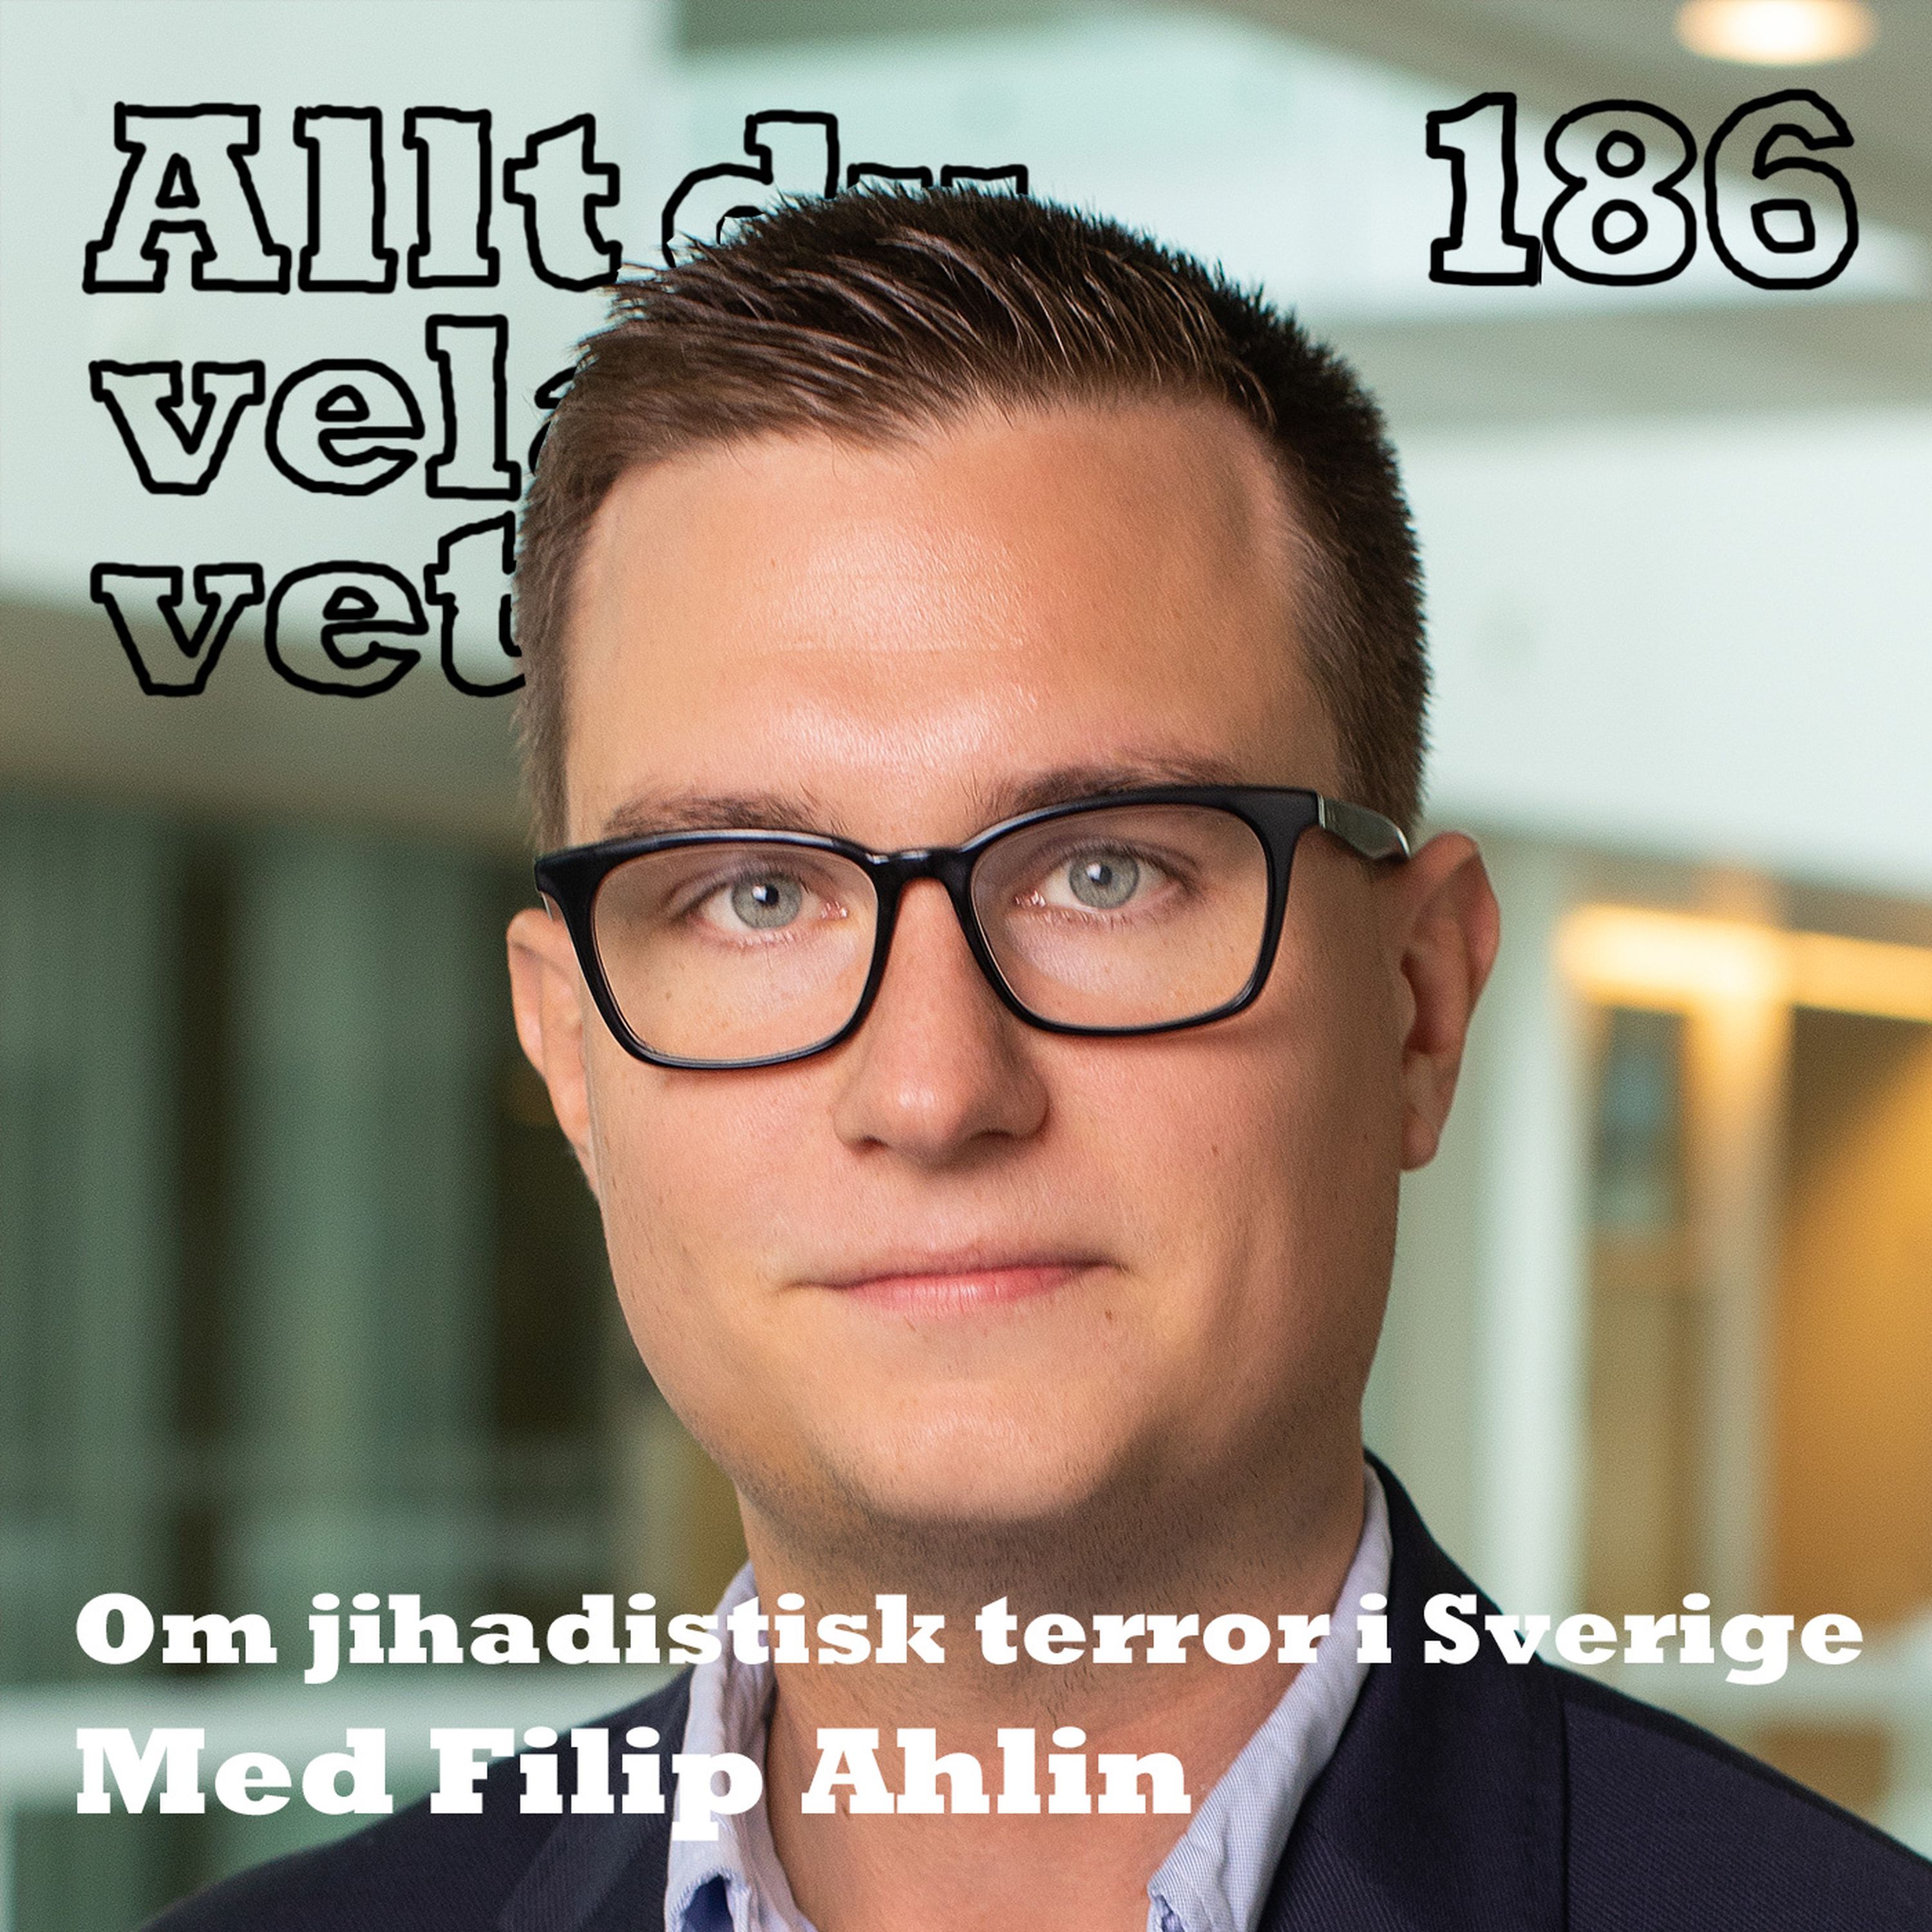 186 Om jihadistisk terror i Sverige med Filip Ahlin